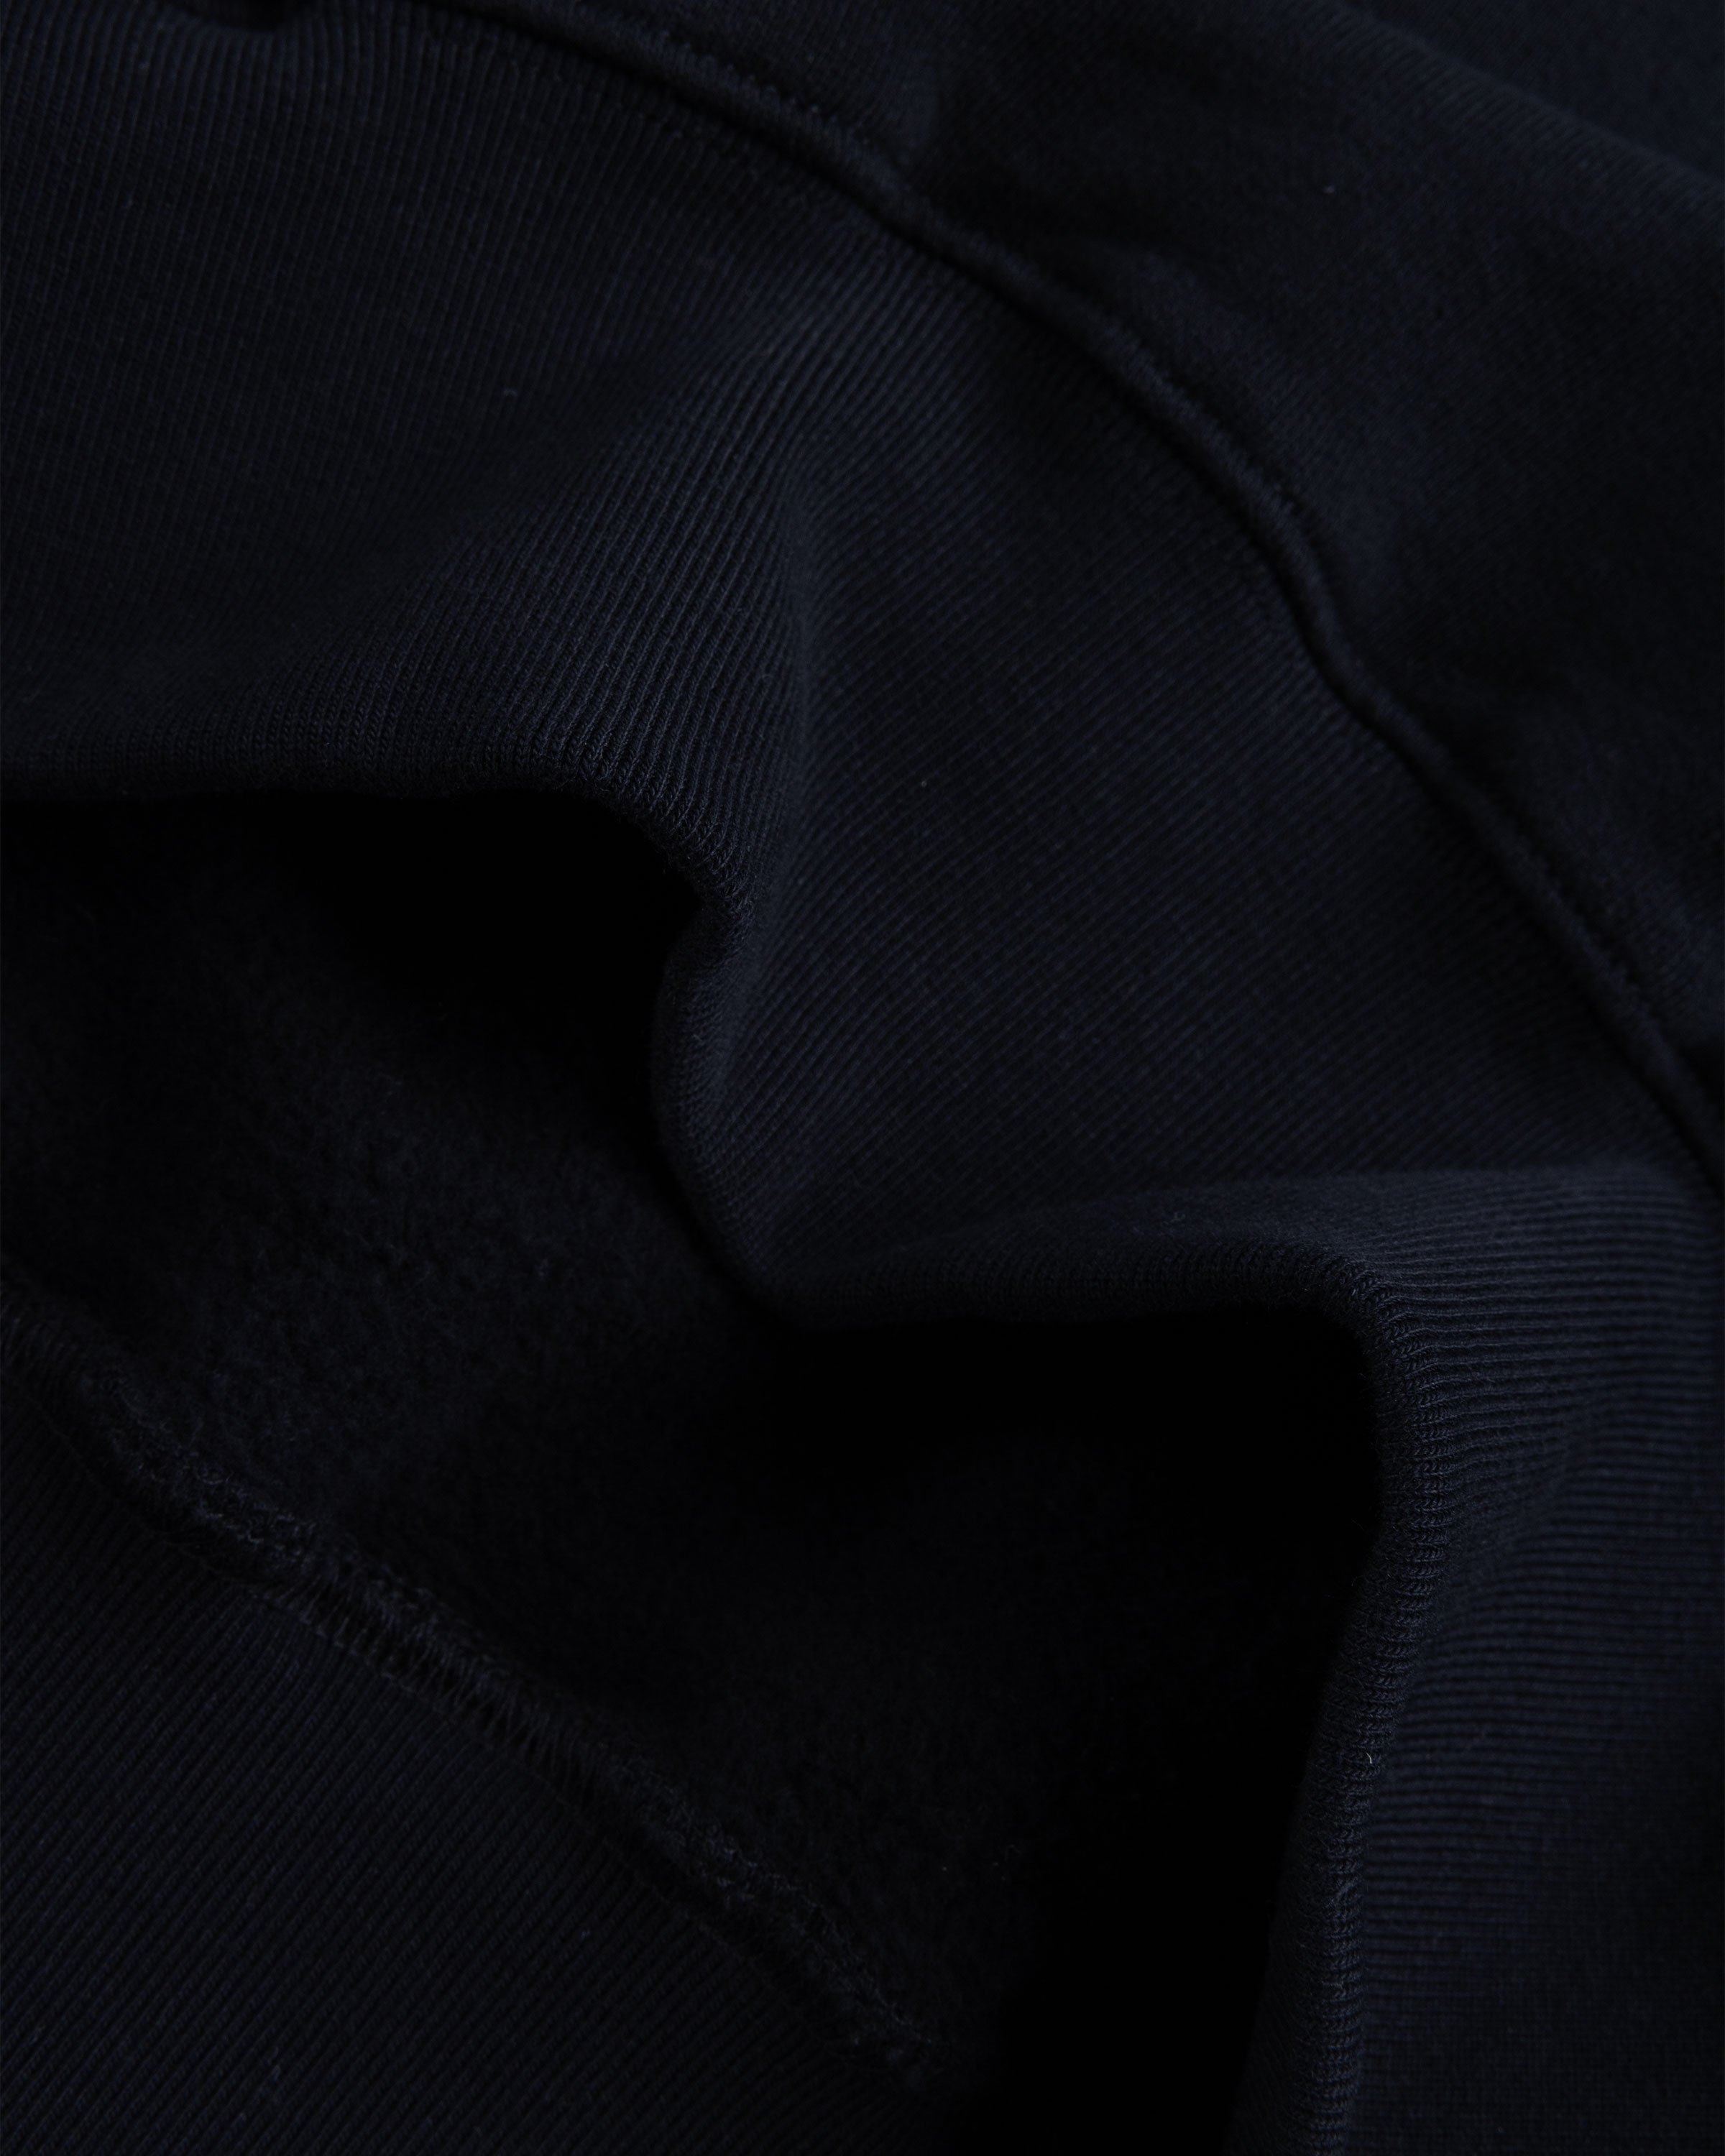 Aries - No Problemo Sweatshirt Black - Clothing - Black - Image 7